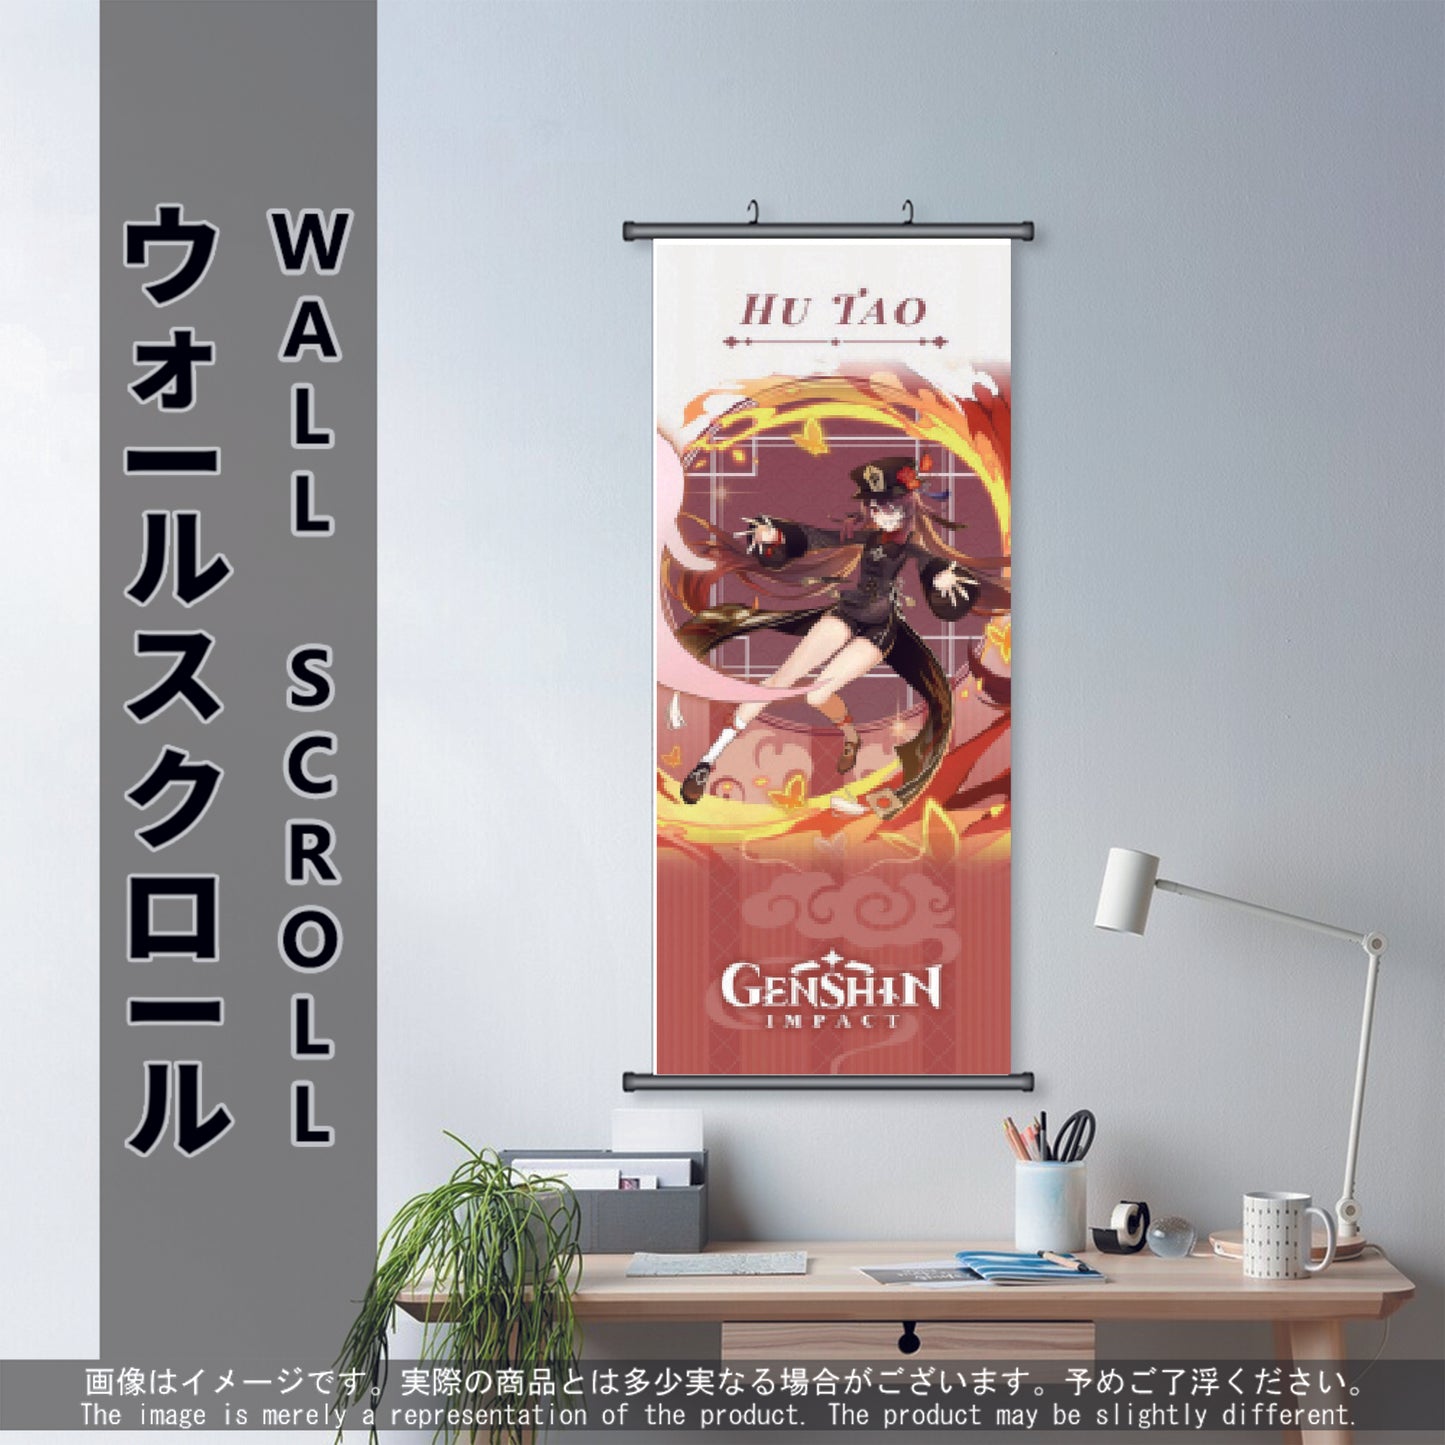 (GSN-PYRO-07) HU TAO Genshin Impact Anime Wall Scroll